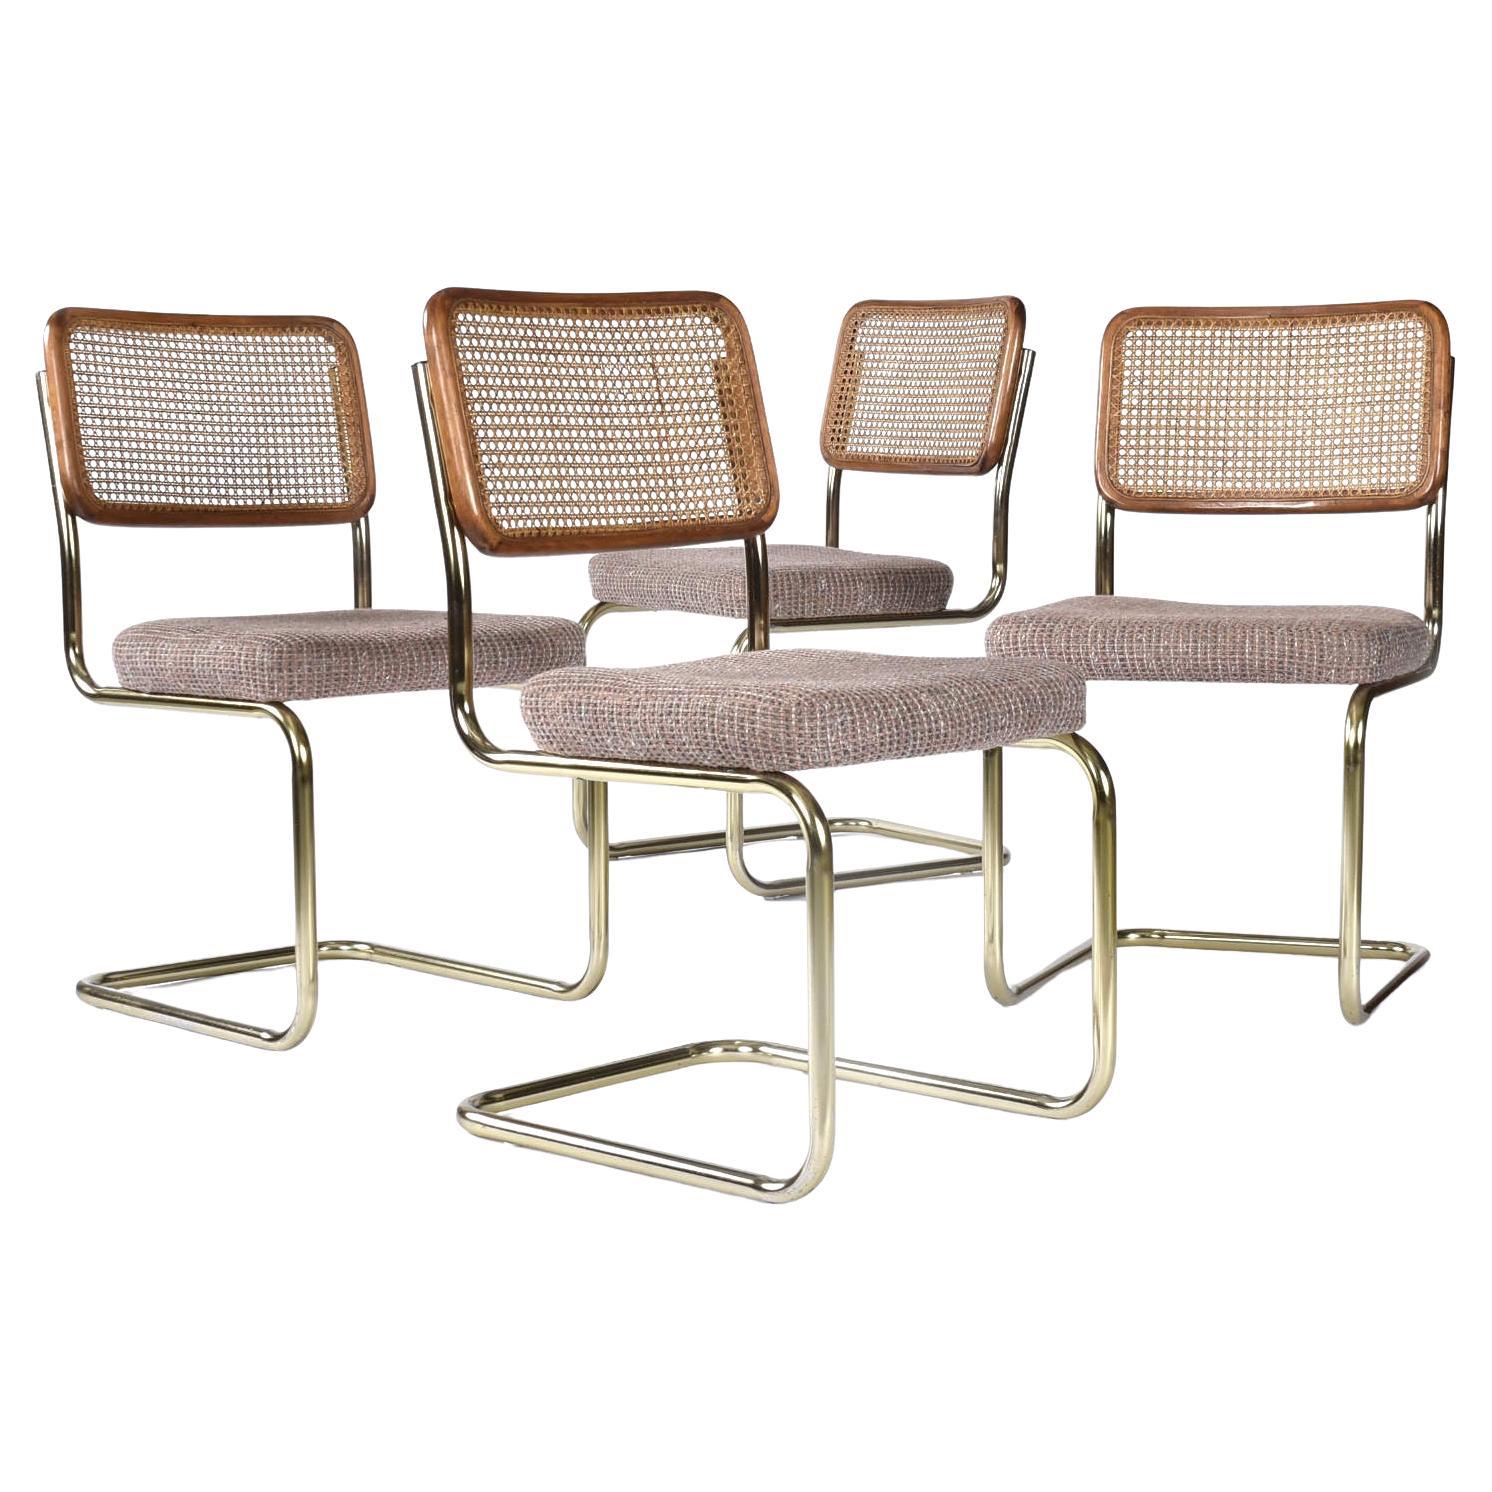 Quatre chaises vintage cannées de style Cesca avec sièges tapissés mauves